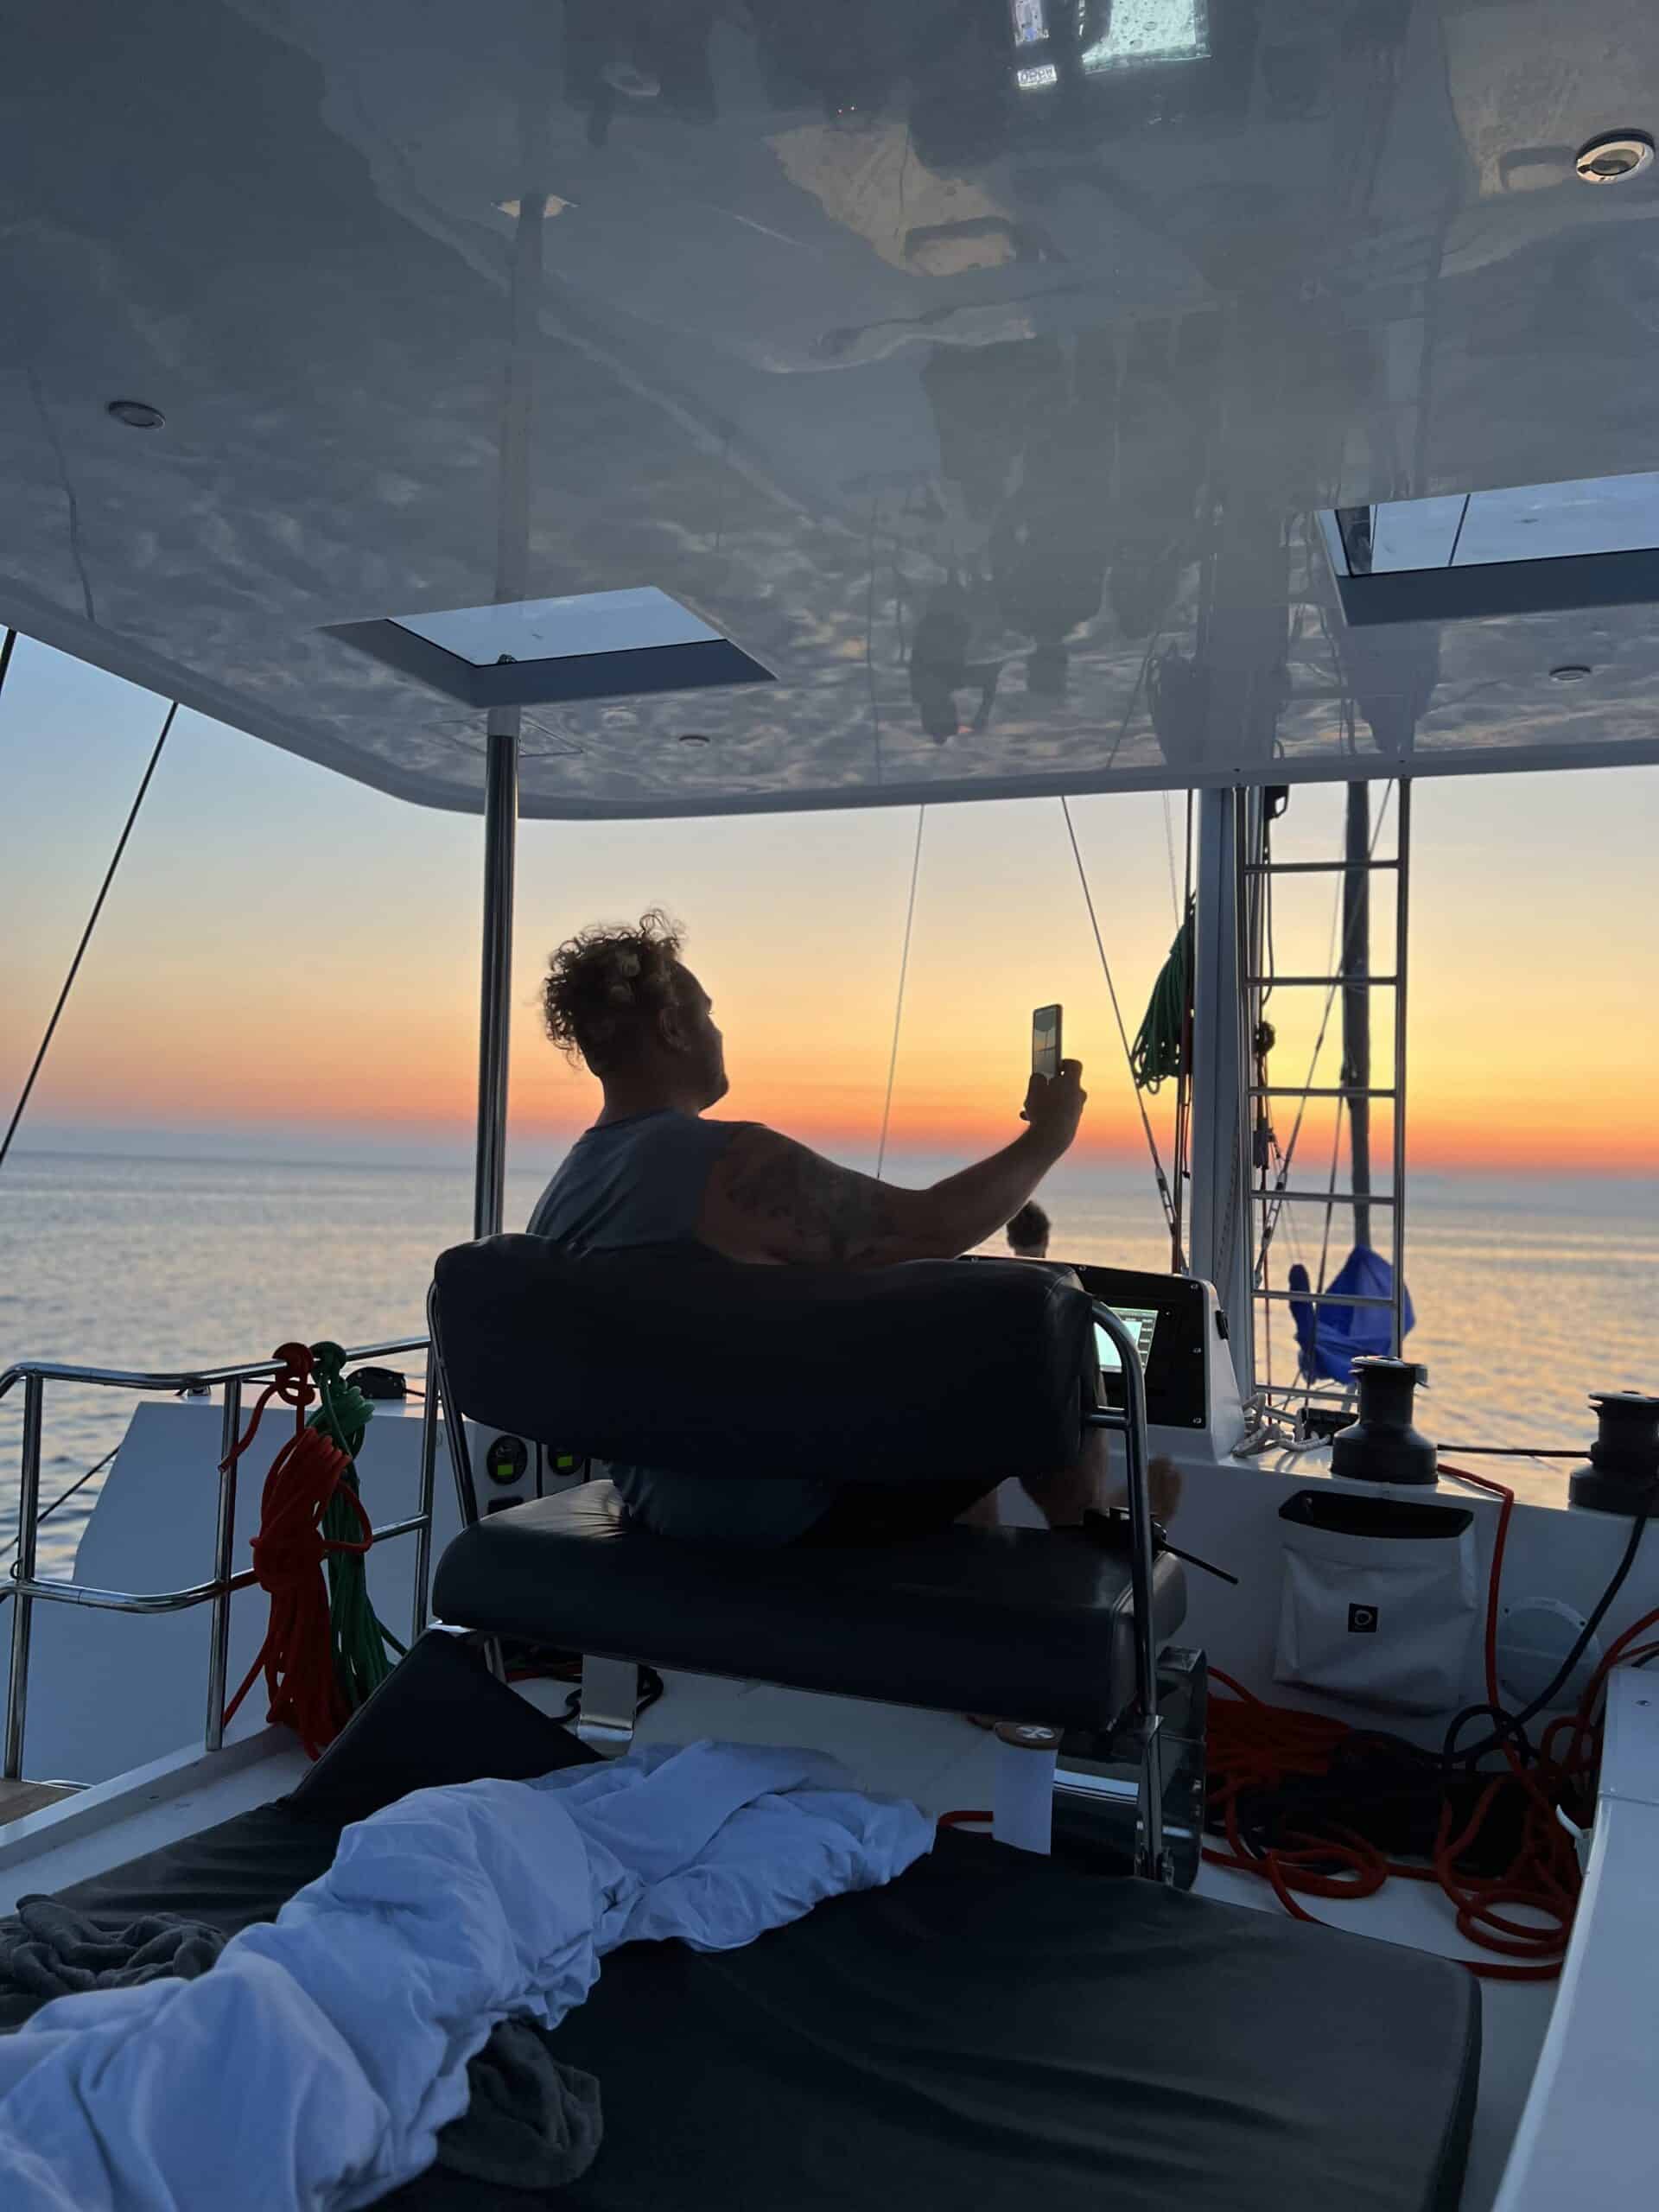 Eine Person sitzt bei Sonnenuntergang auf einer Segelyacht und hält ein Mobiltelefon hoch, um die Szene festzuhalten. Im Hintergrund erstreckt sich der Ozean unter einem Himmel mit Farbverlauf.